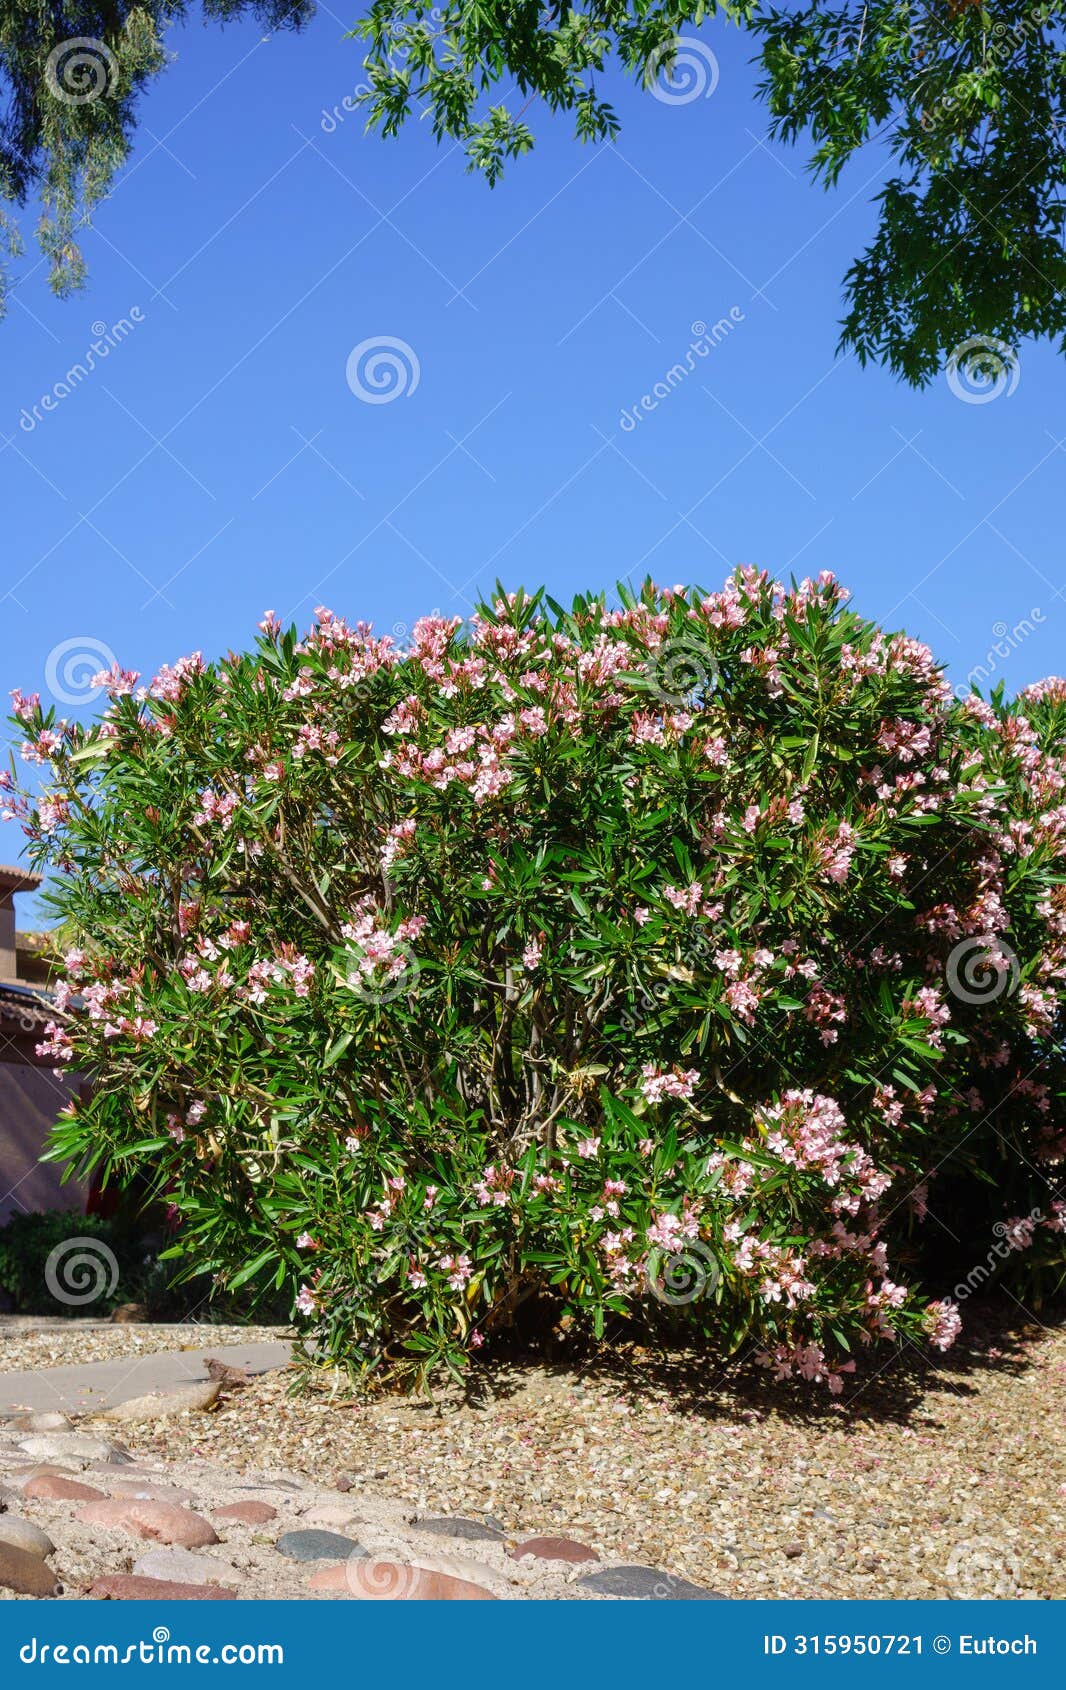 blooming pink oleander shrubs in spring